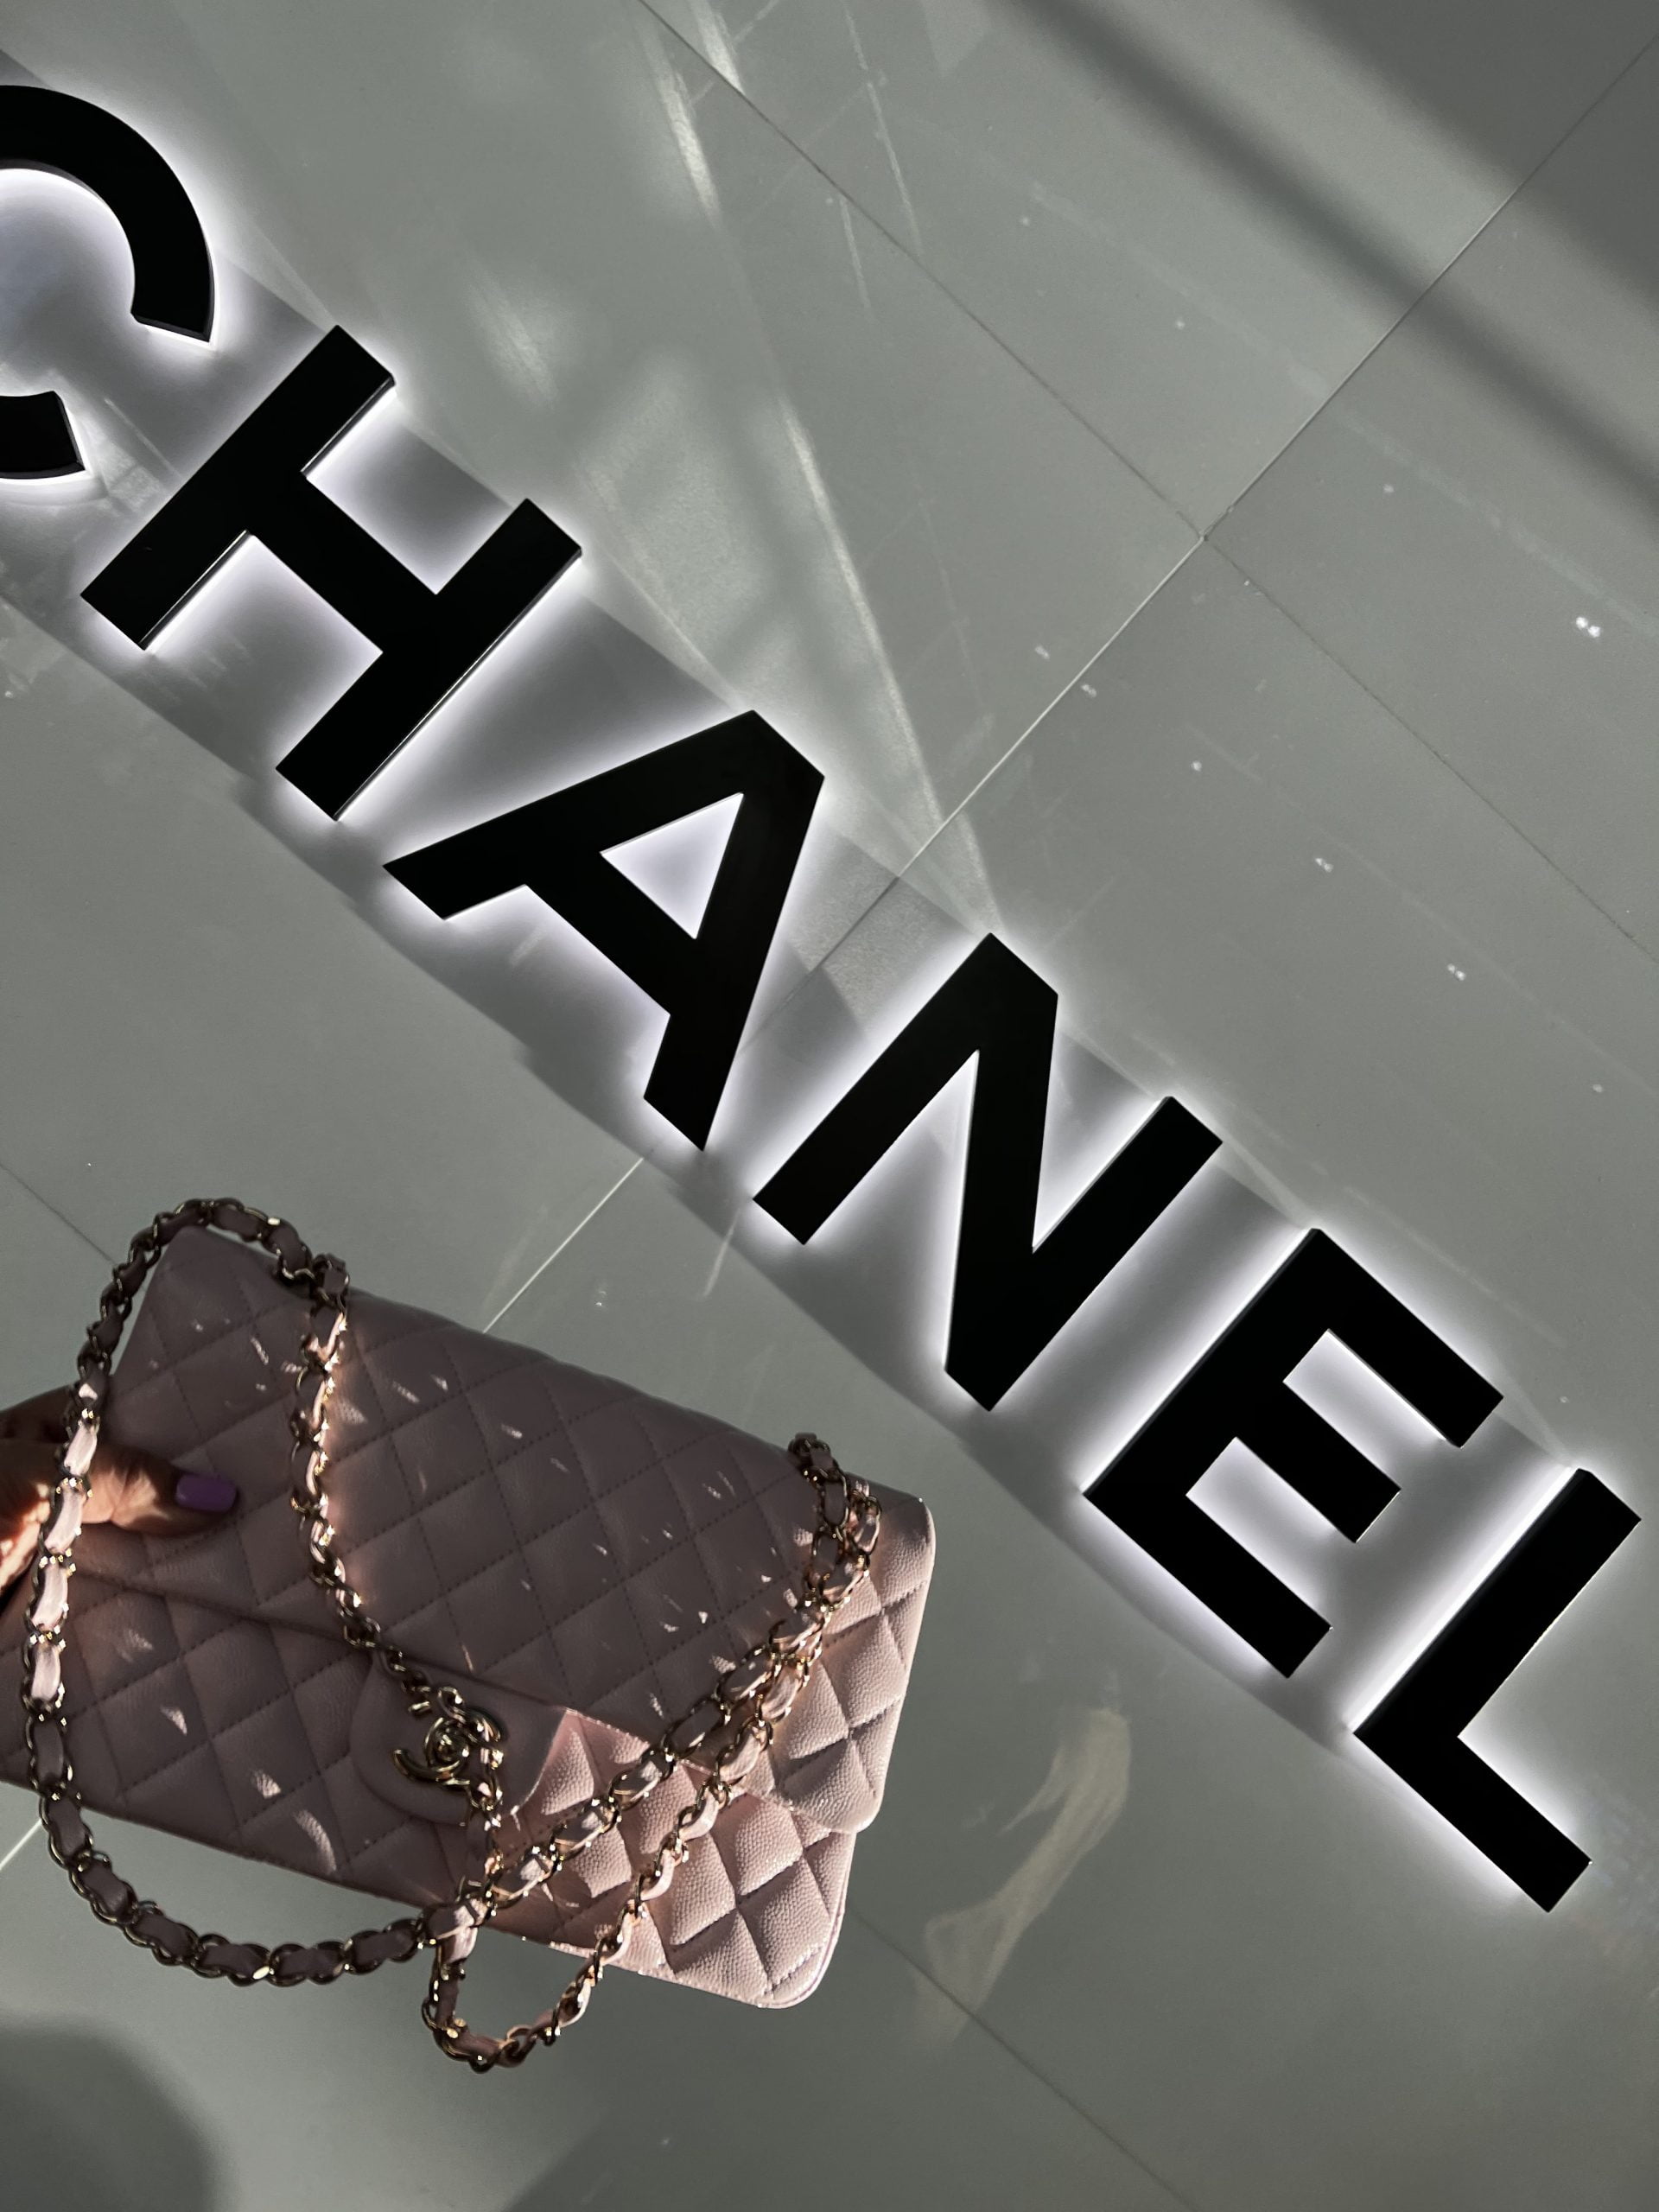 New Chanel Coco Handle Prices 2021 - PurseBop